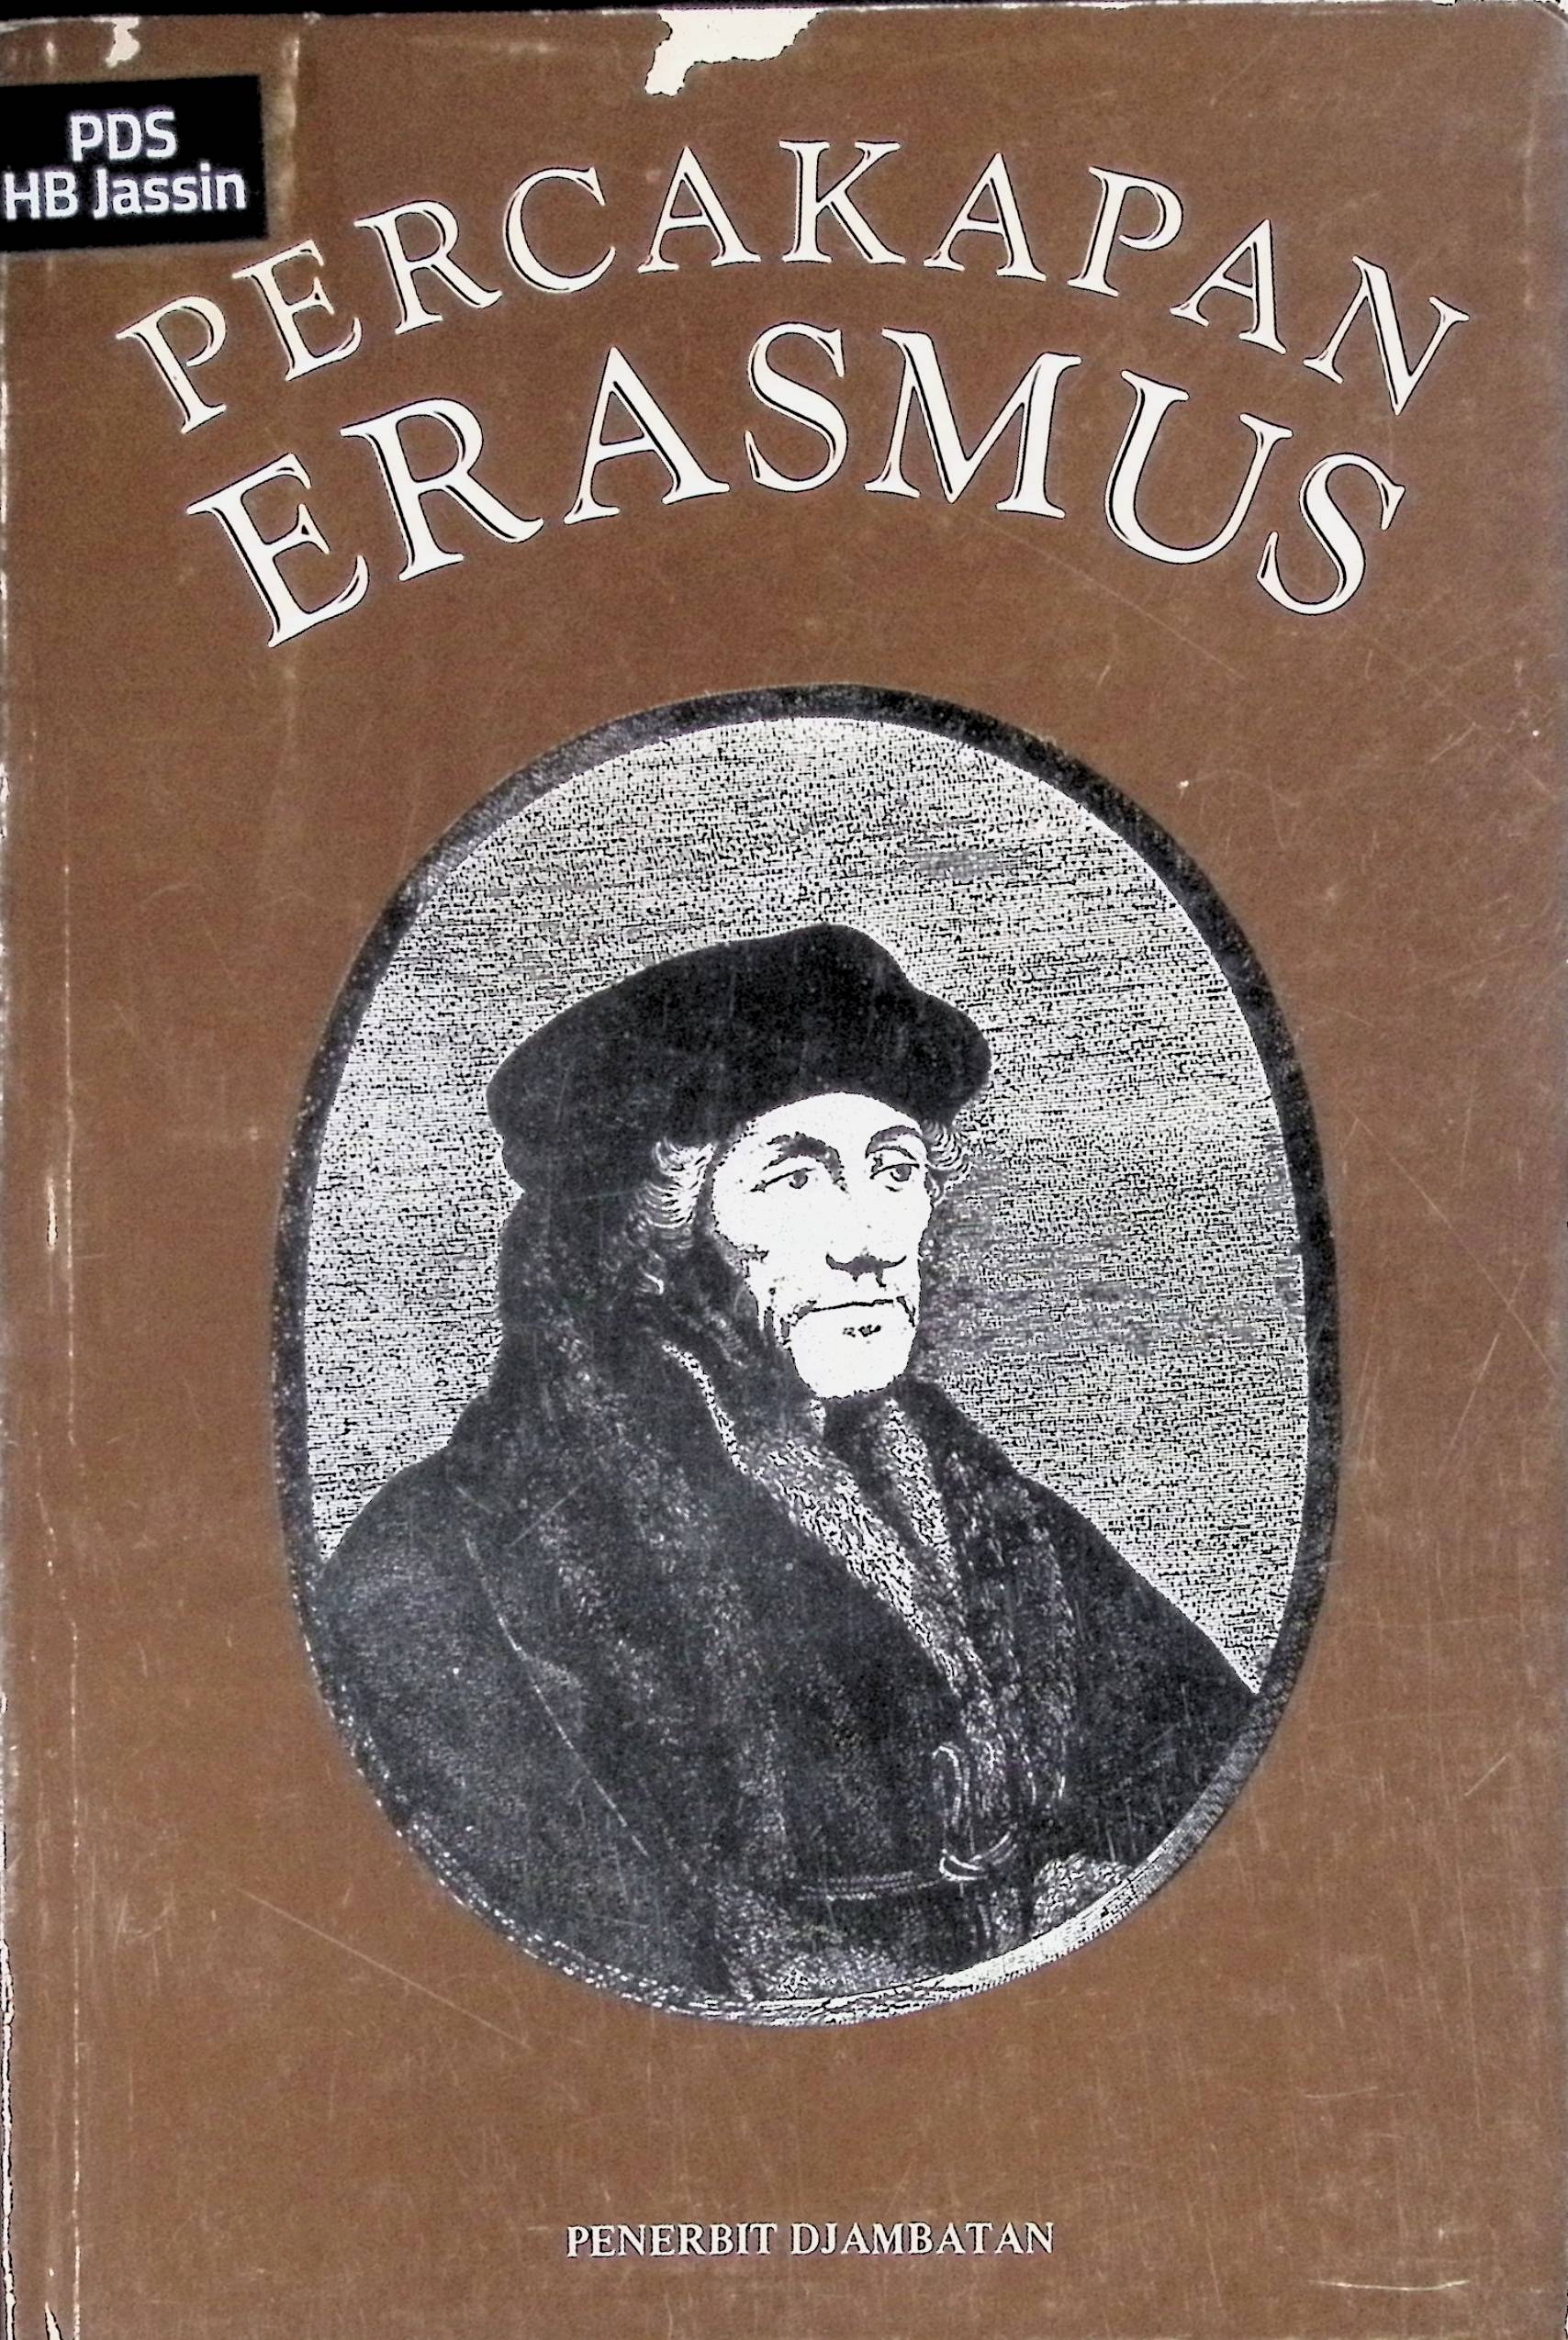 Percakapan Erasmus